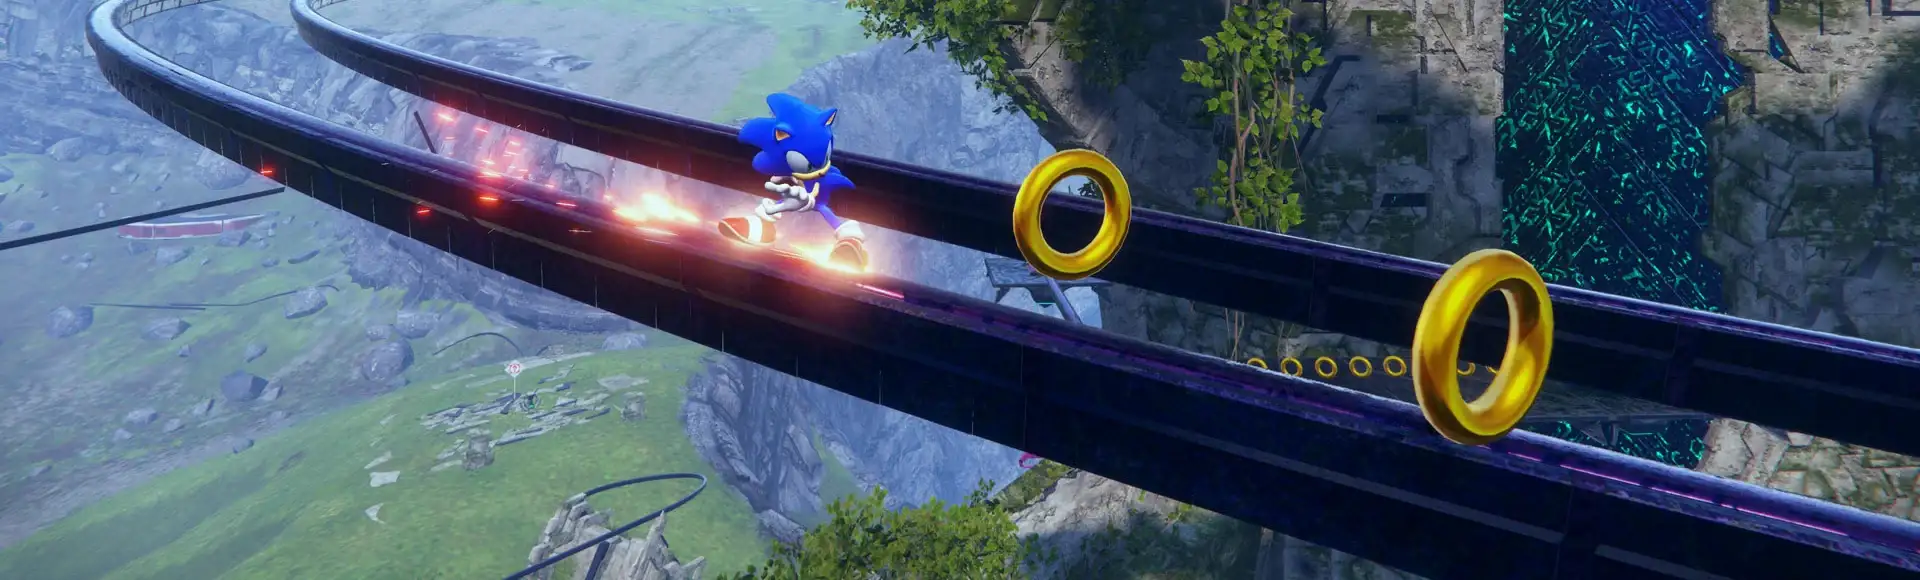 Jogo Sonic.io no Jogos 360